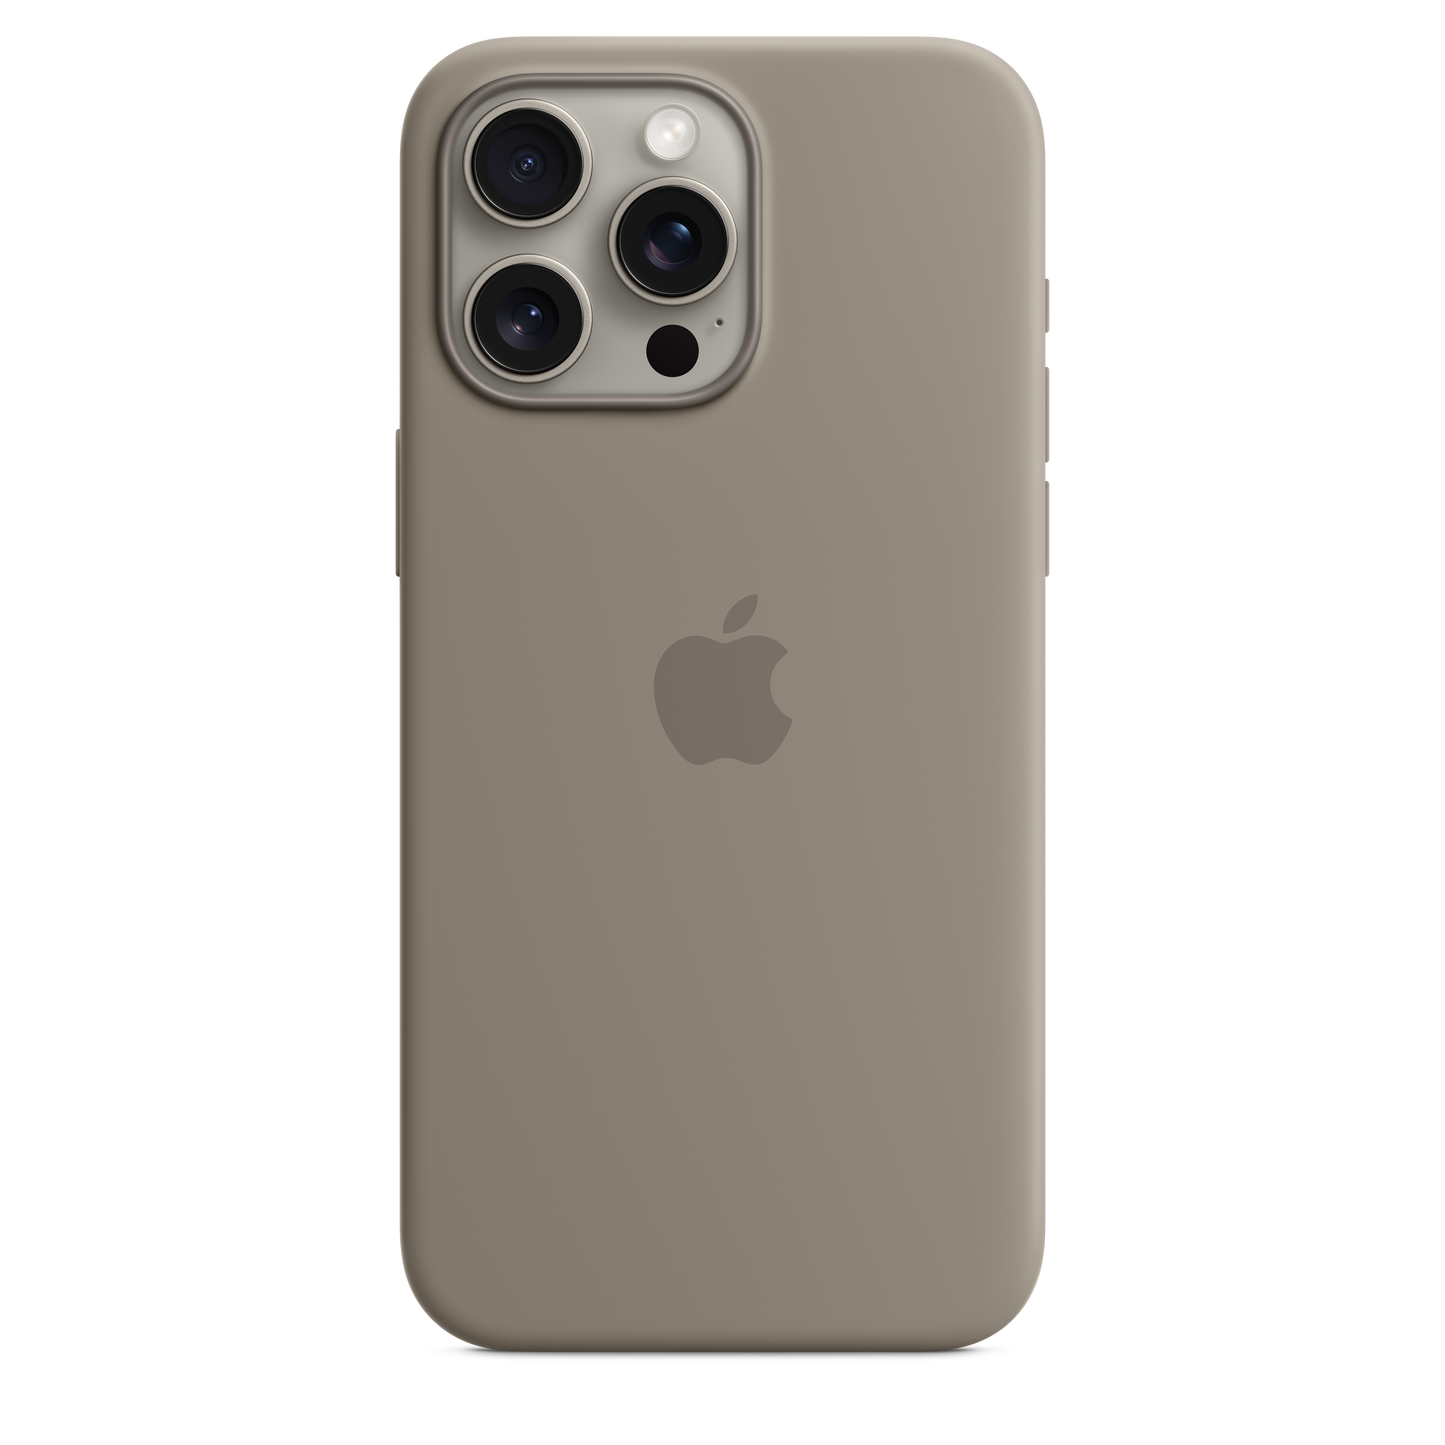 Funda de silicona con MagSafe para el iPhone 13 mini - (PRODUCT)RED - Apple  (ES)